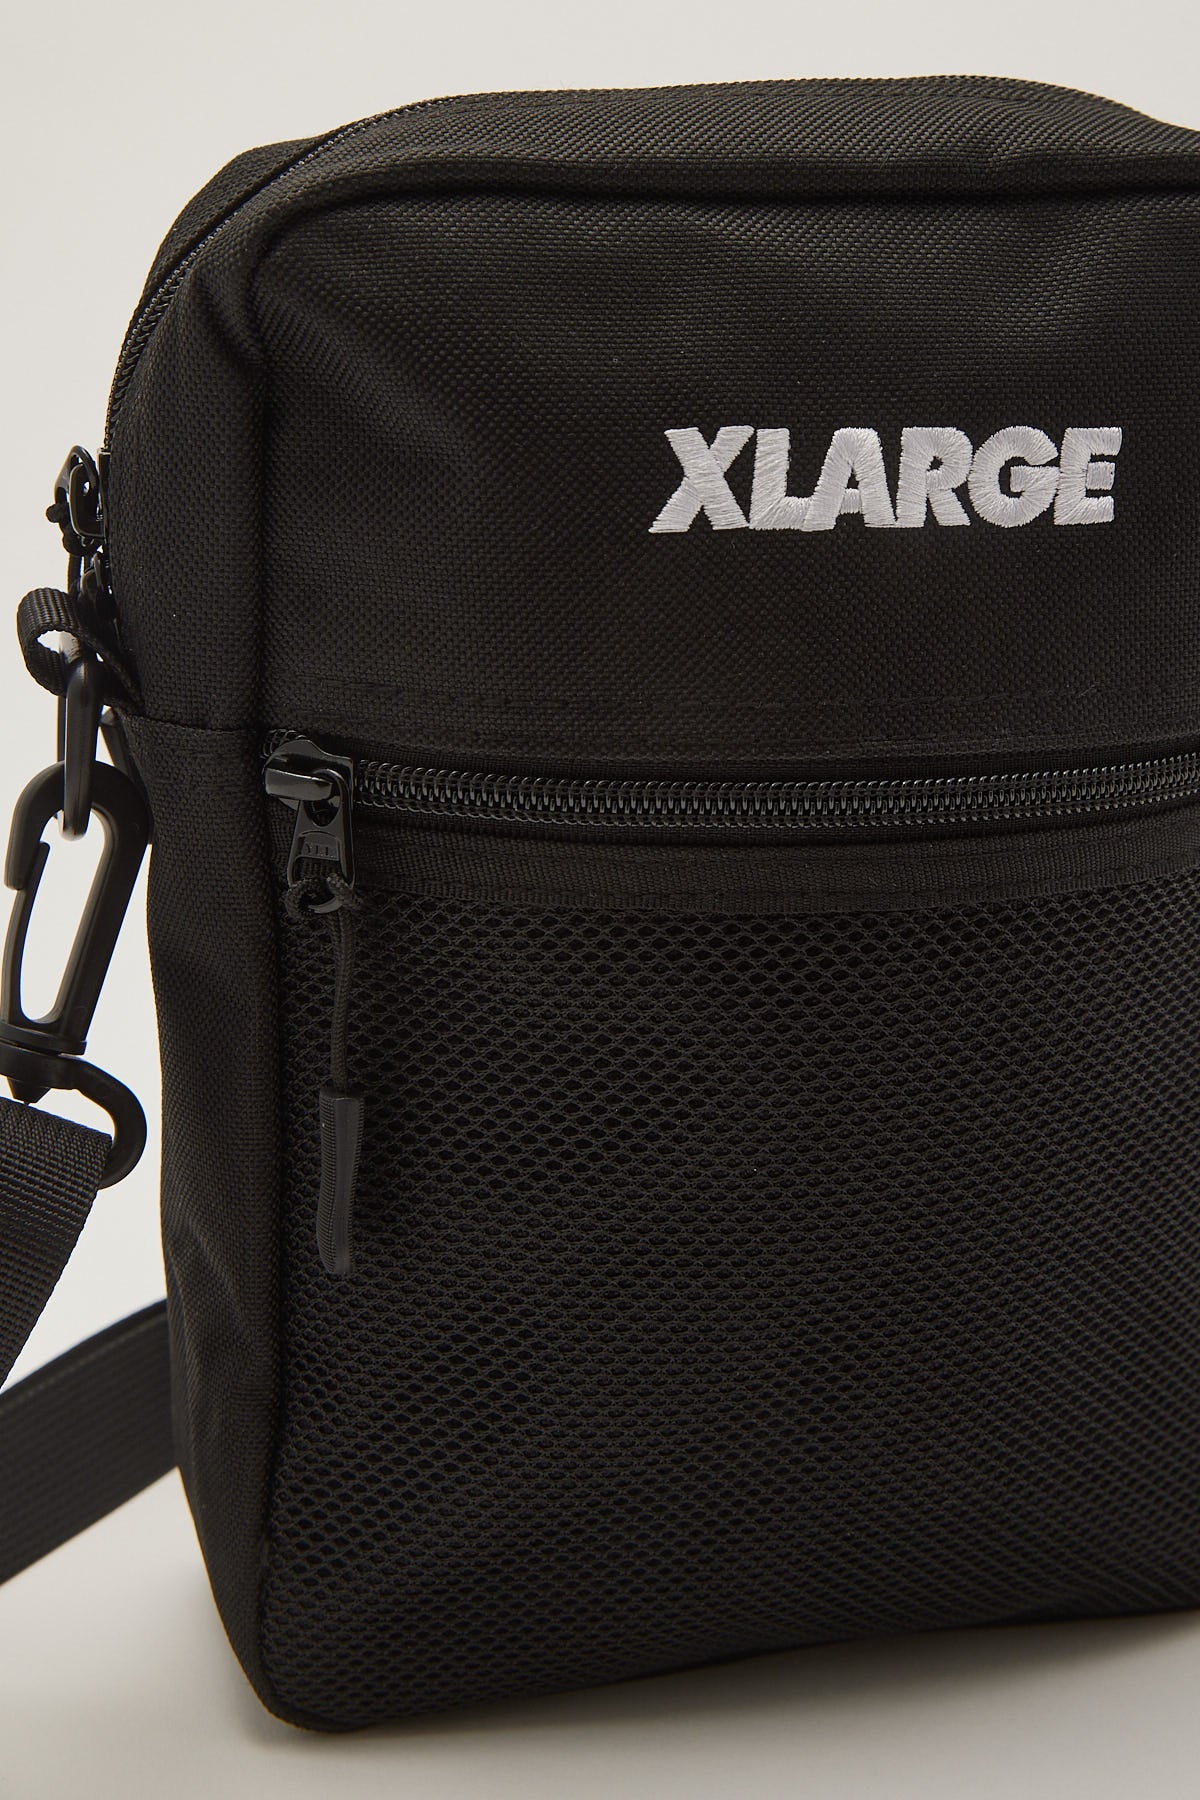 Xlarge Italic Utlity Bag Black